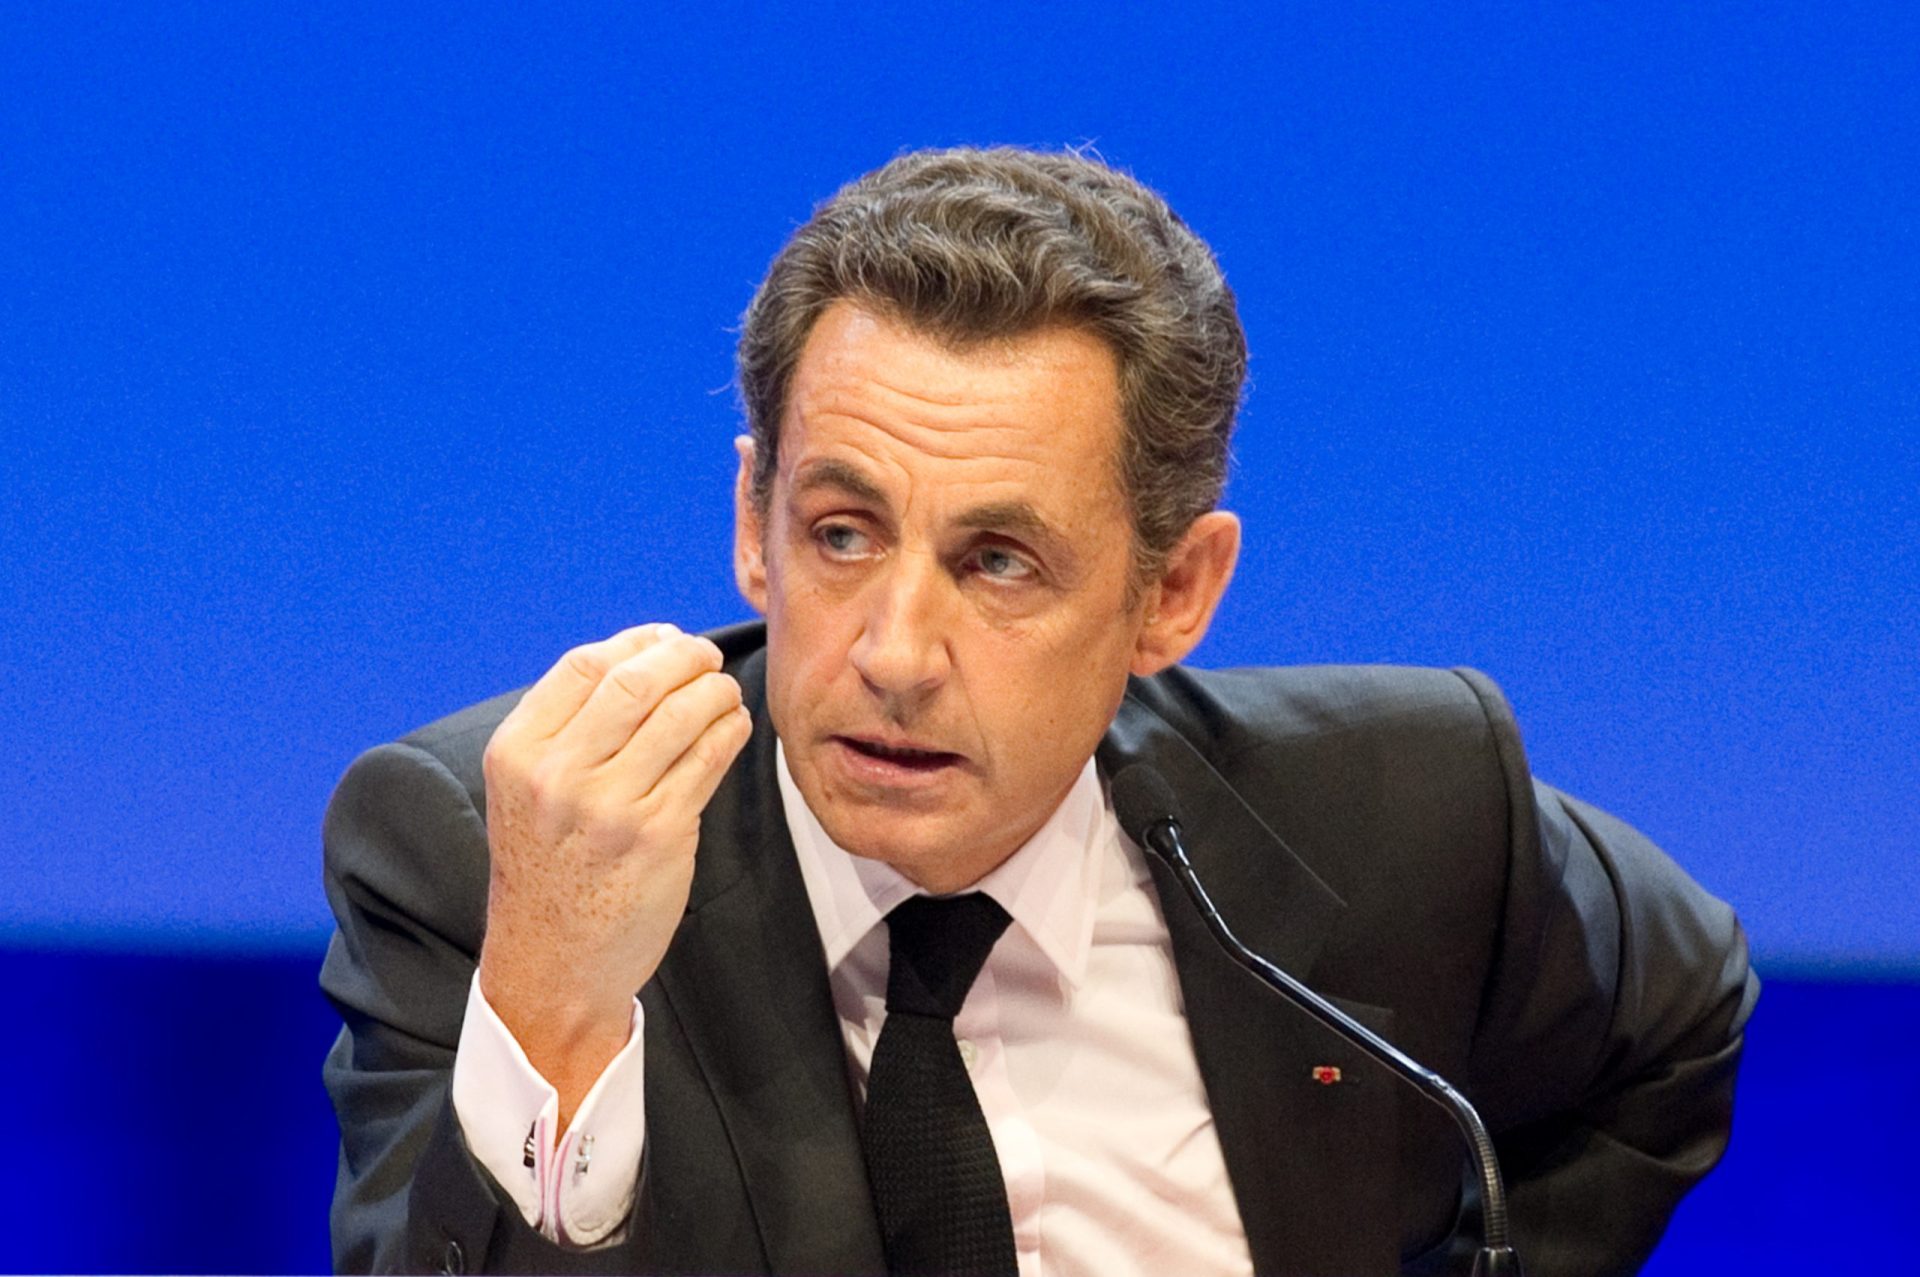 Sarkozy propõe acolher refugiados de guerra apenas durante o conflito